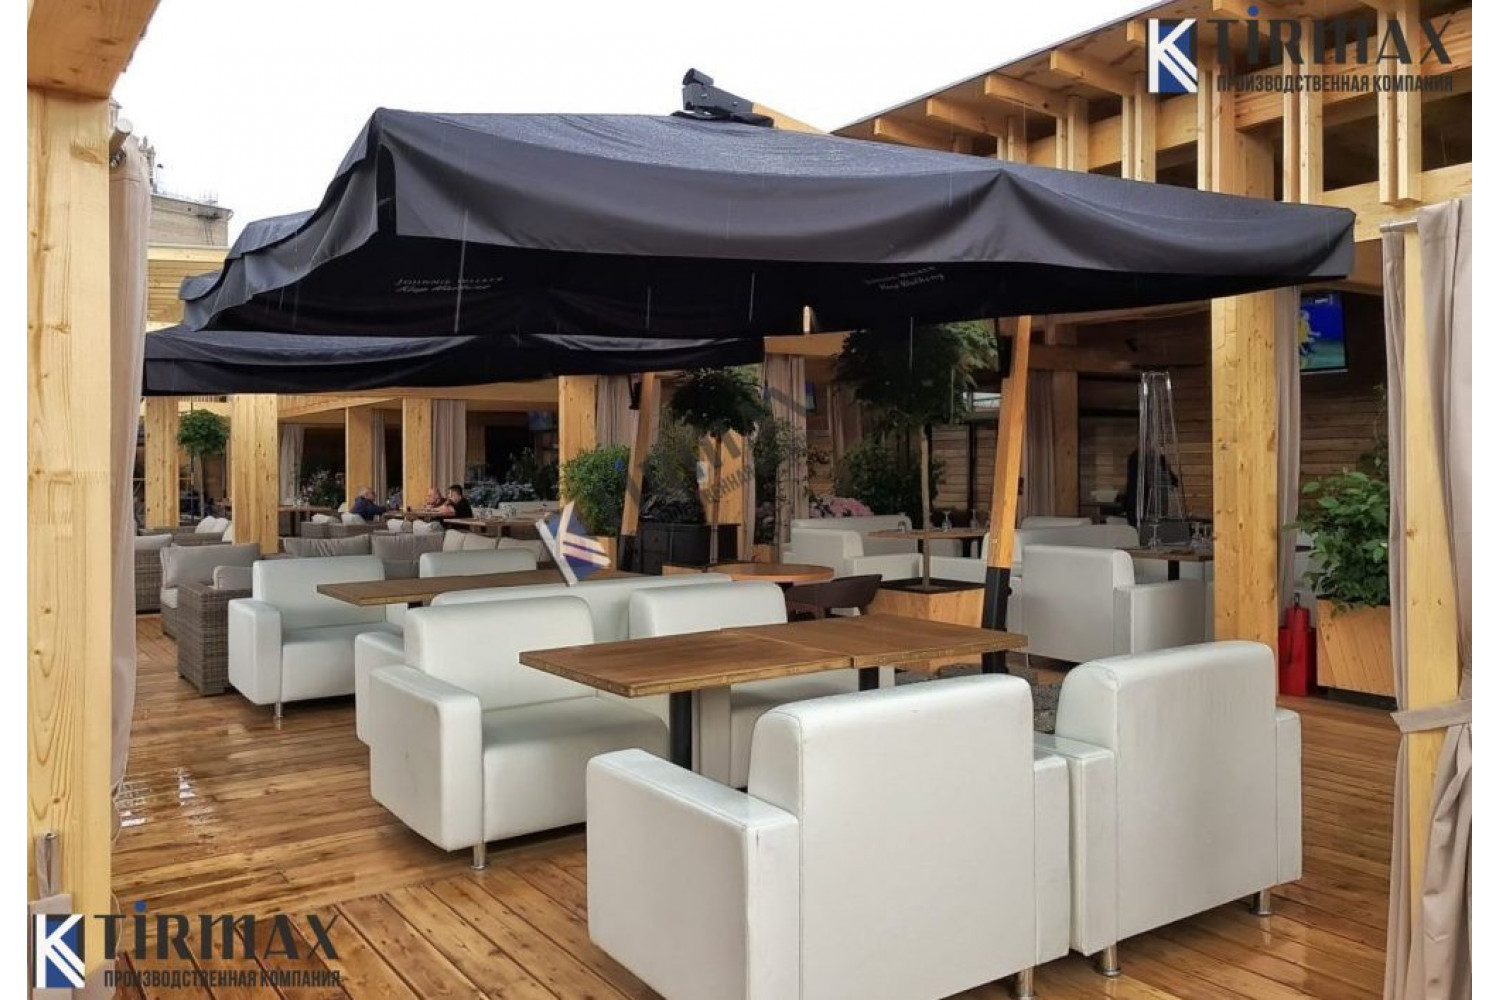 Брендированные зонты с размерами купола 4х4 метра и с боковой опорой на деревянной стойке для ресторана “WOW” (Novikov Group), расположенного на Кутузовском проспекте.